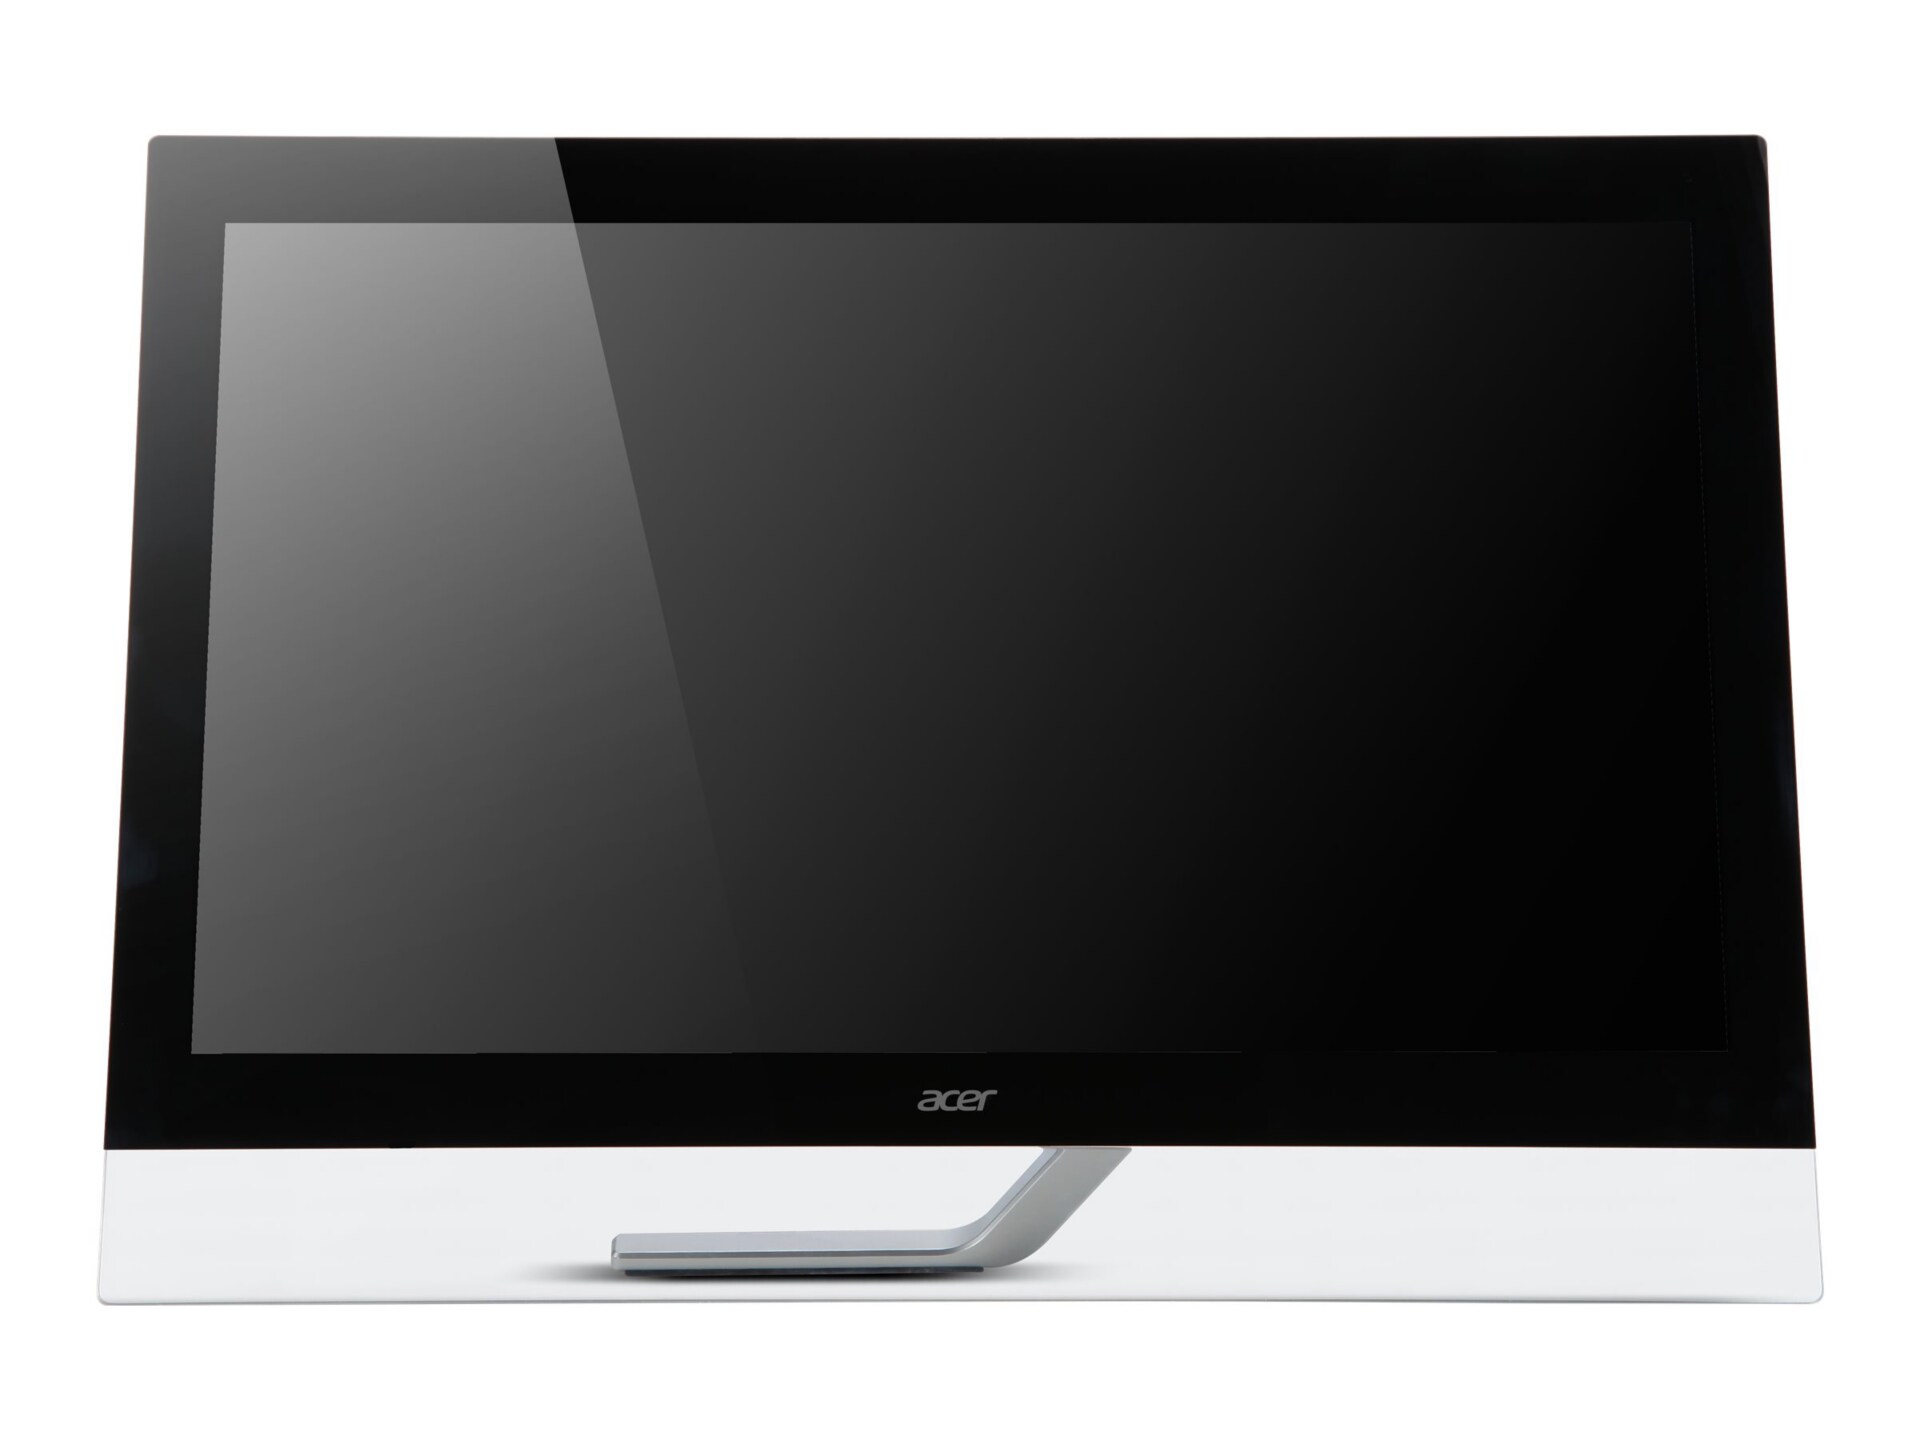 Acer T232HL - LED monitor - Full HD (1080p) - 23"